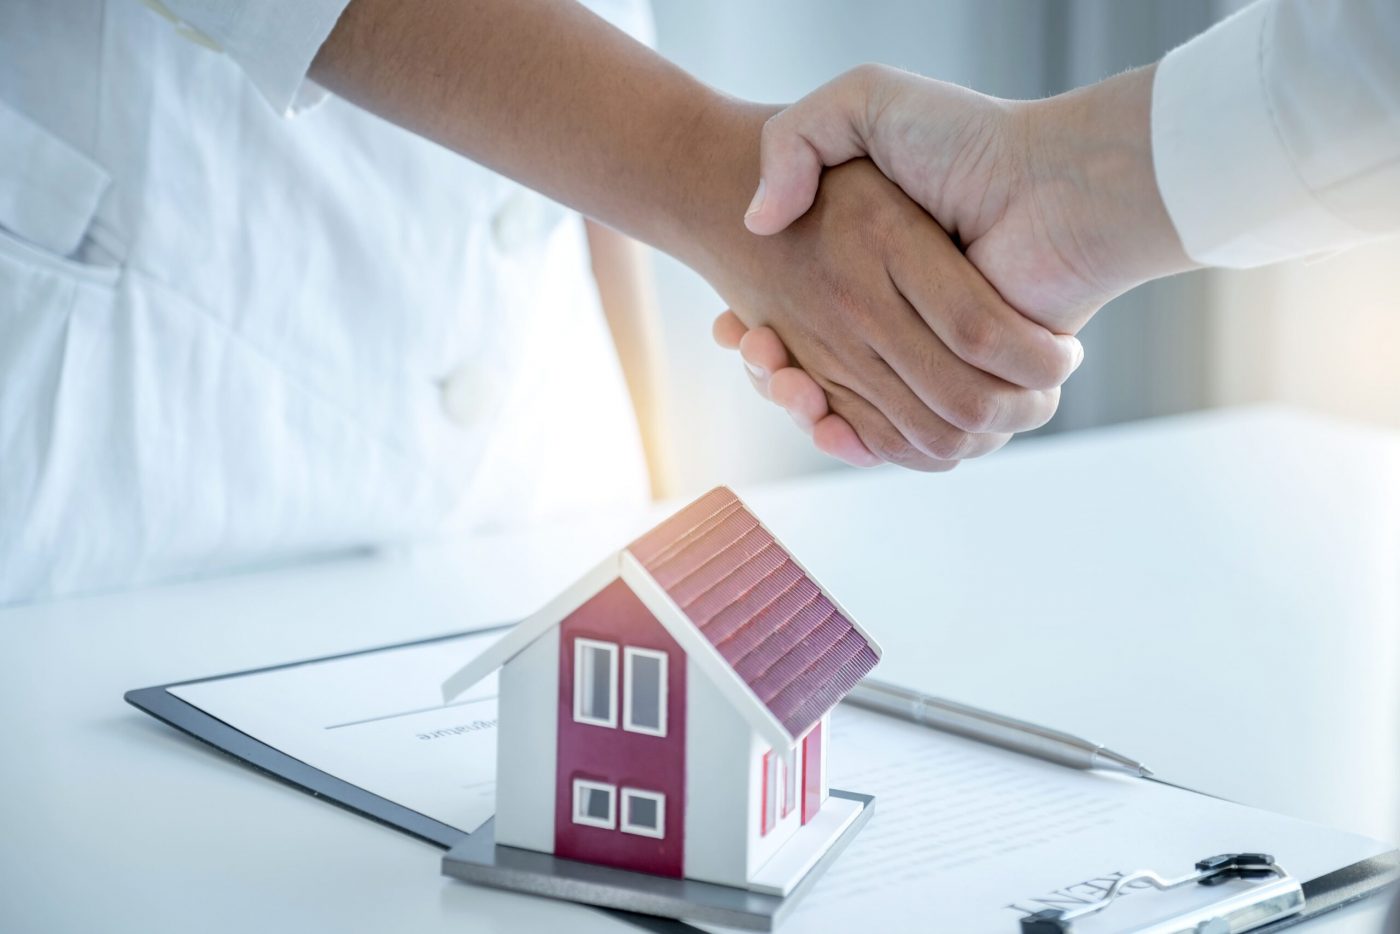 Délégation d’assurance de prêt, un excellent moyen pour optimiser le coût de son emprunt immobilier